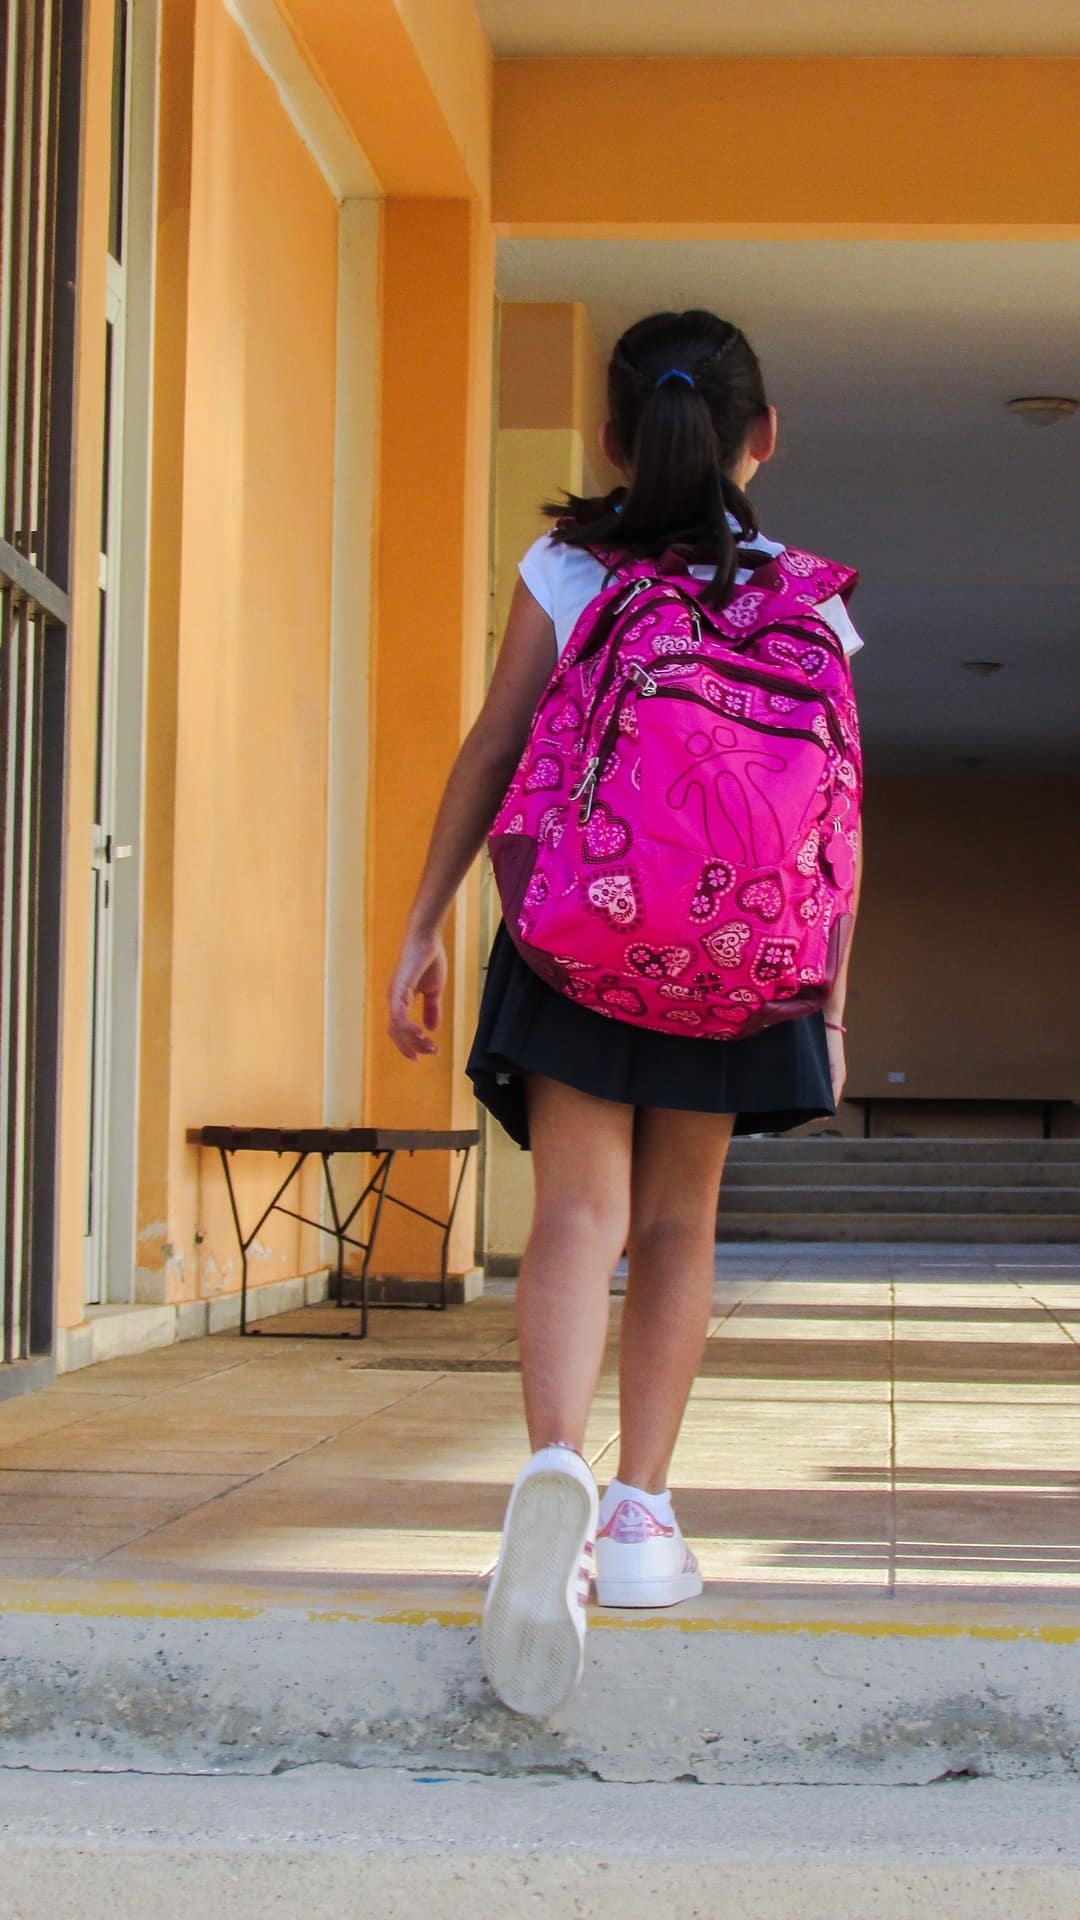 οι σχολικές τσάντες παρεμβαίνουν στη σπονδυλική στήλη του παιδιού